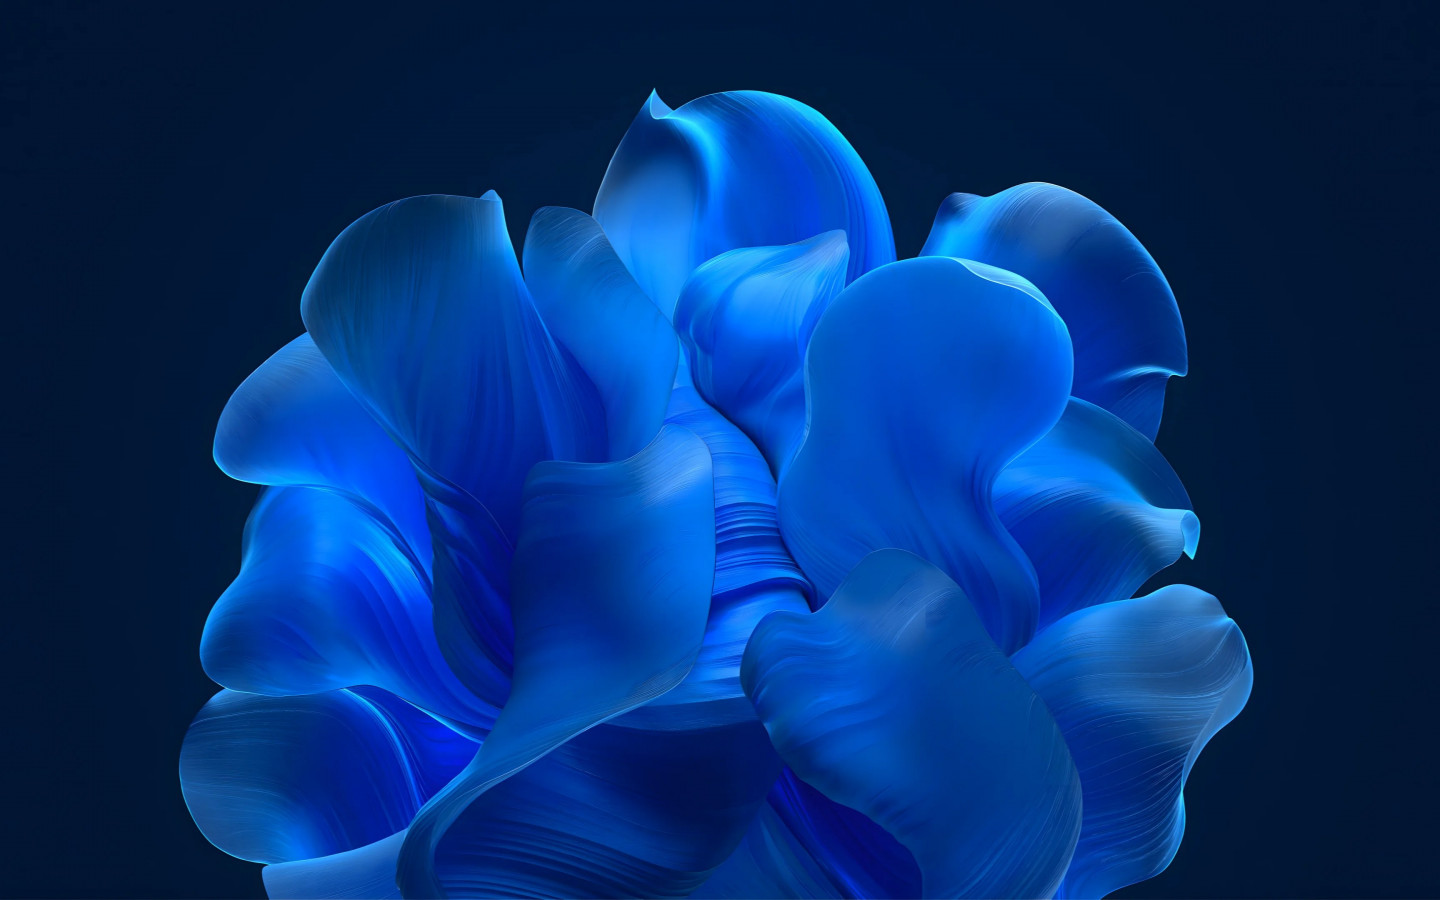 The blue petals wallpaper 1440x900